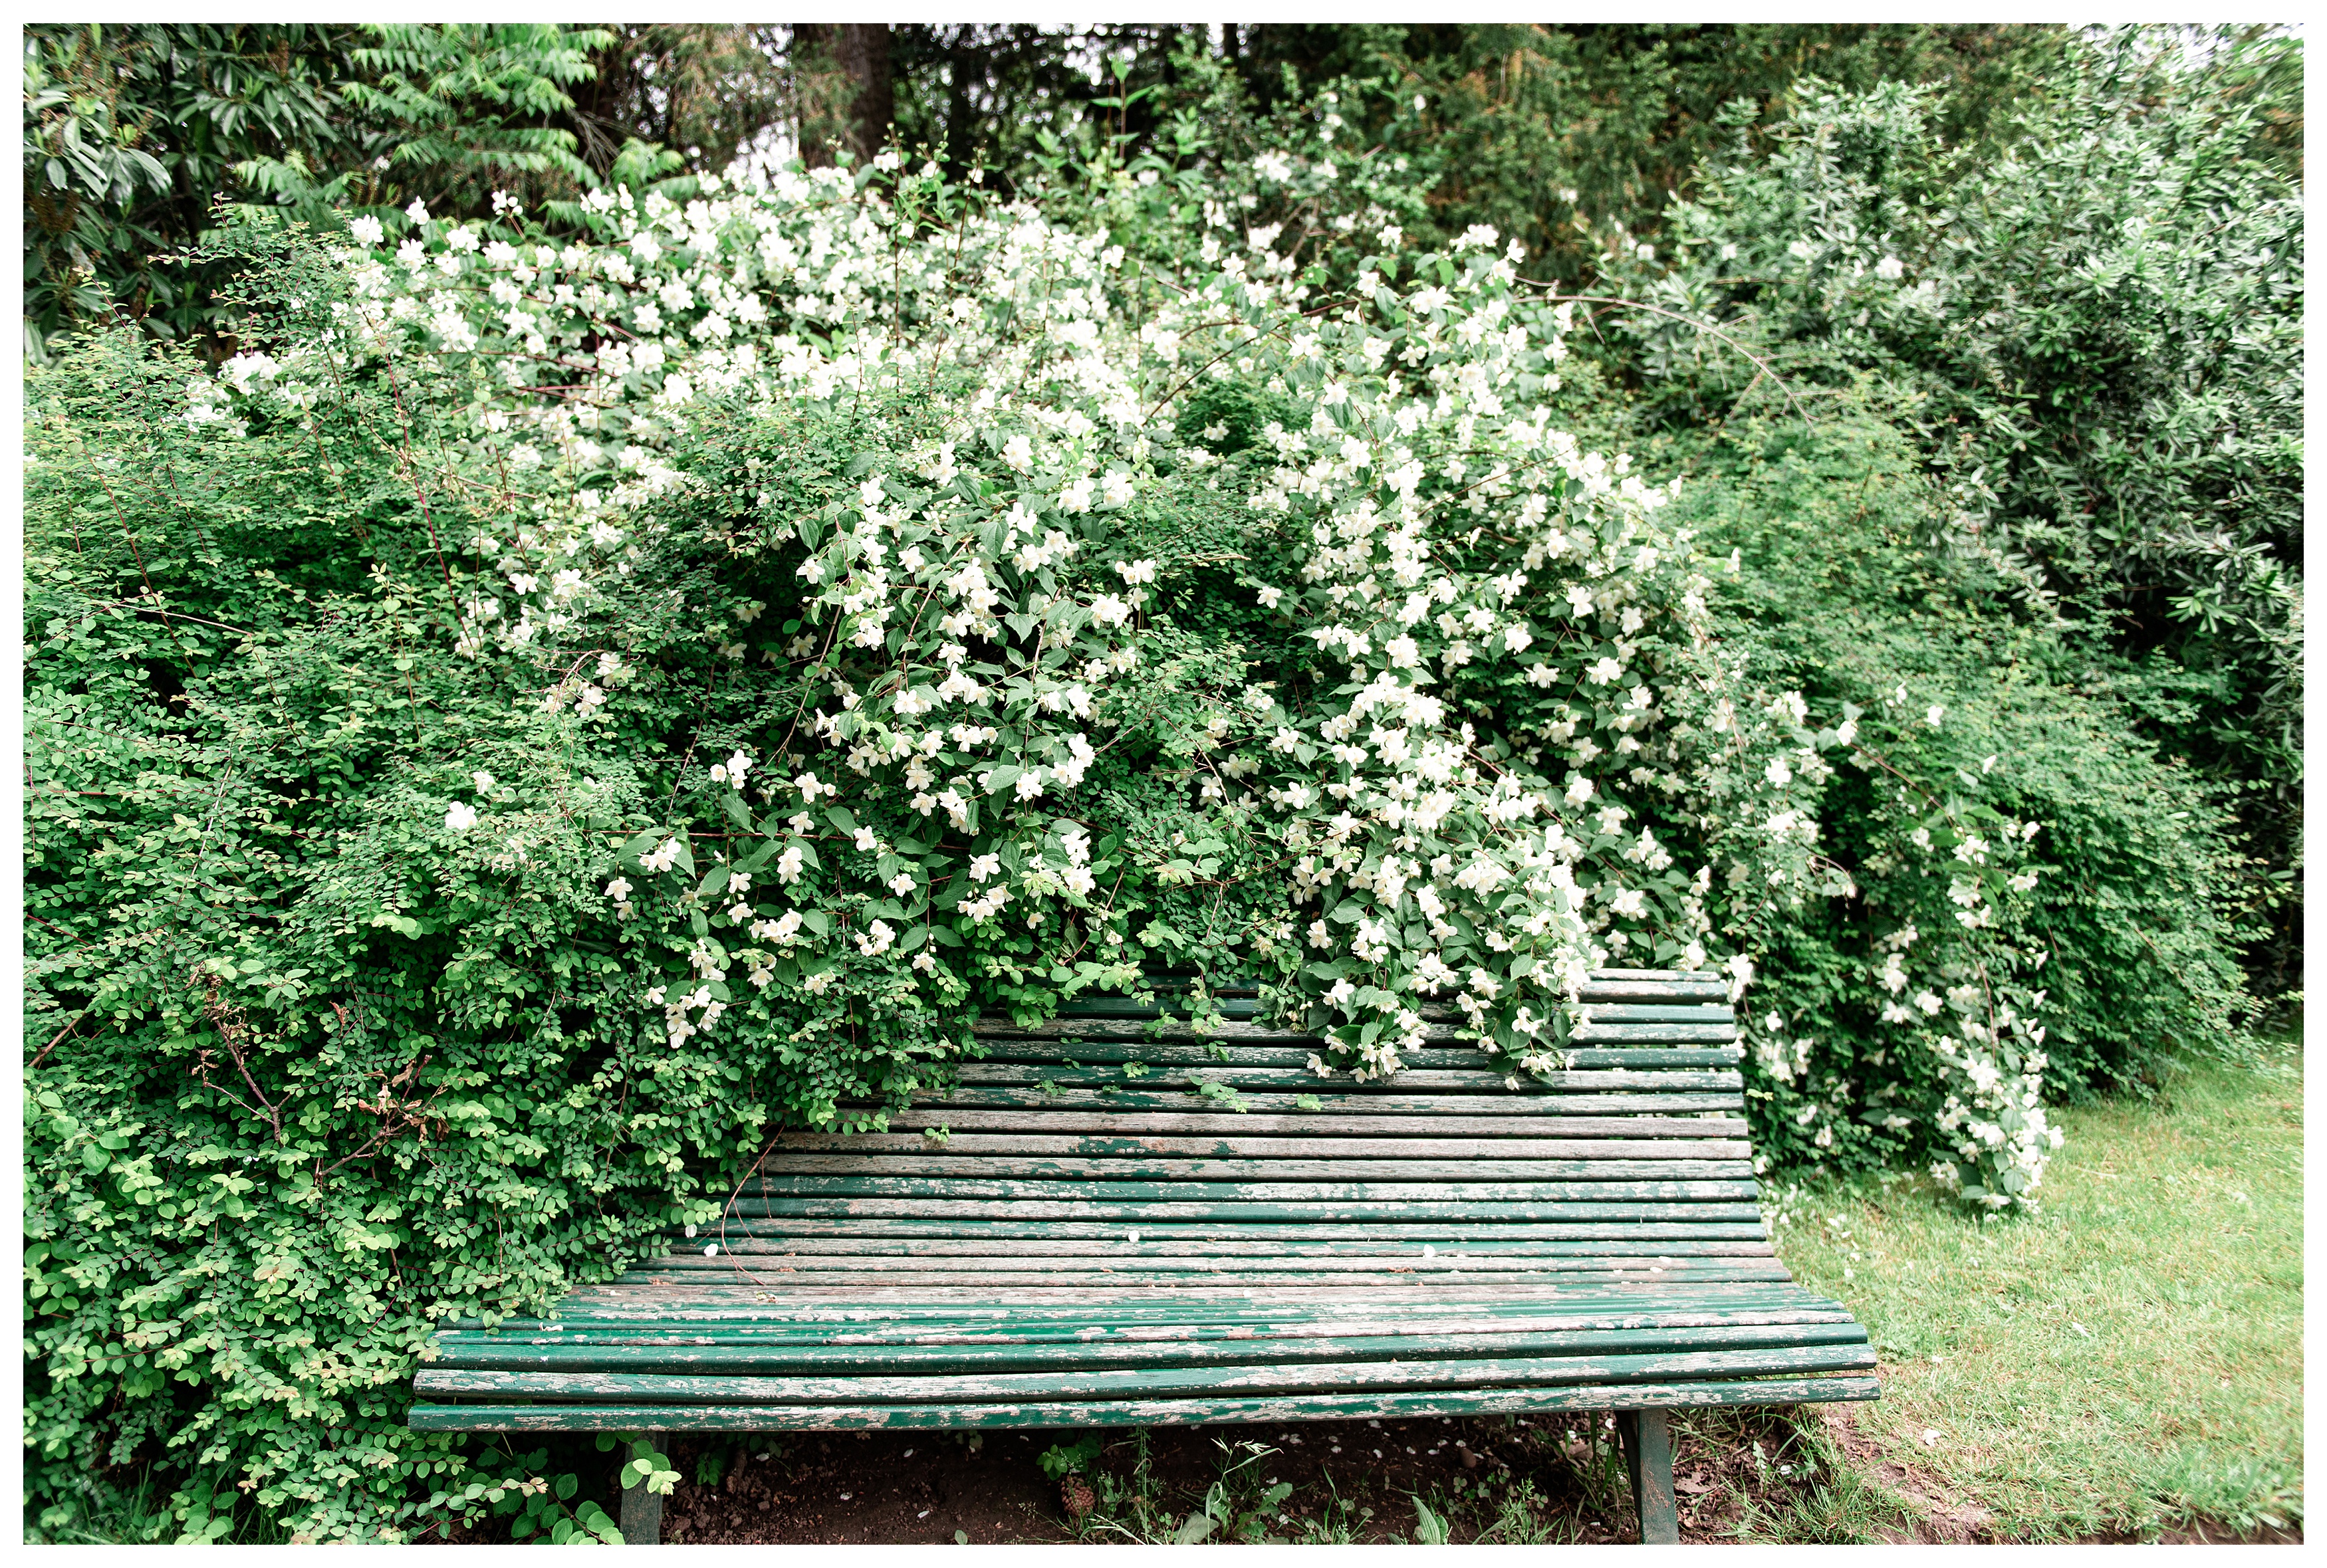 green paris park bench overrun by white flowers in the parc de bagatelle